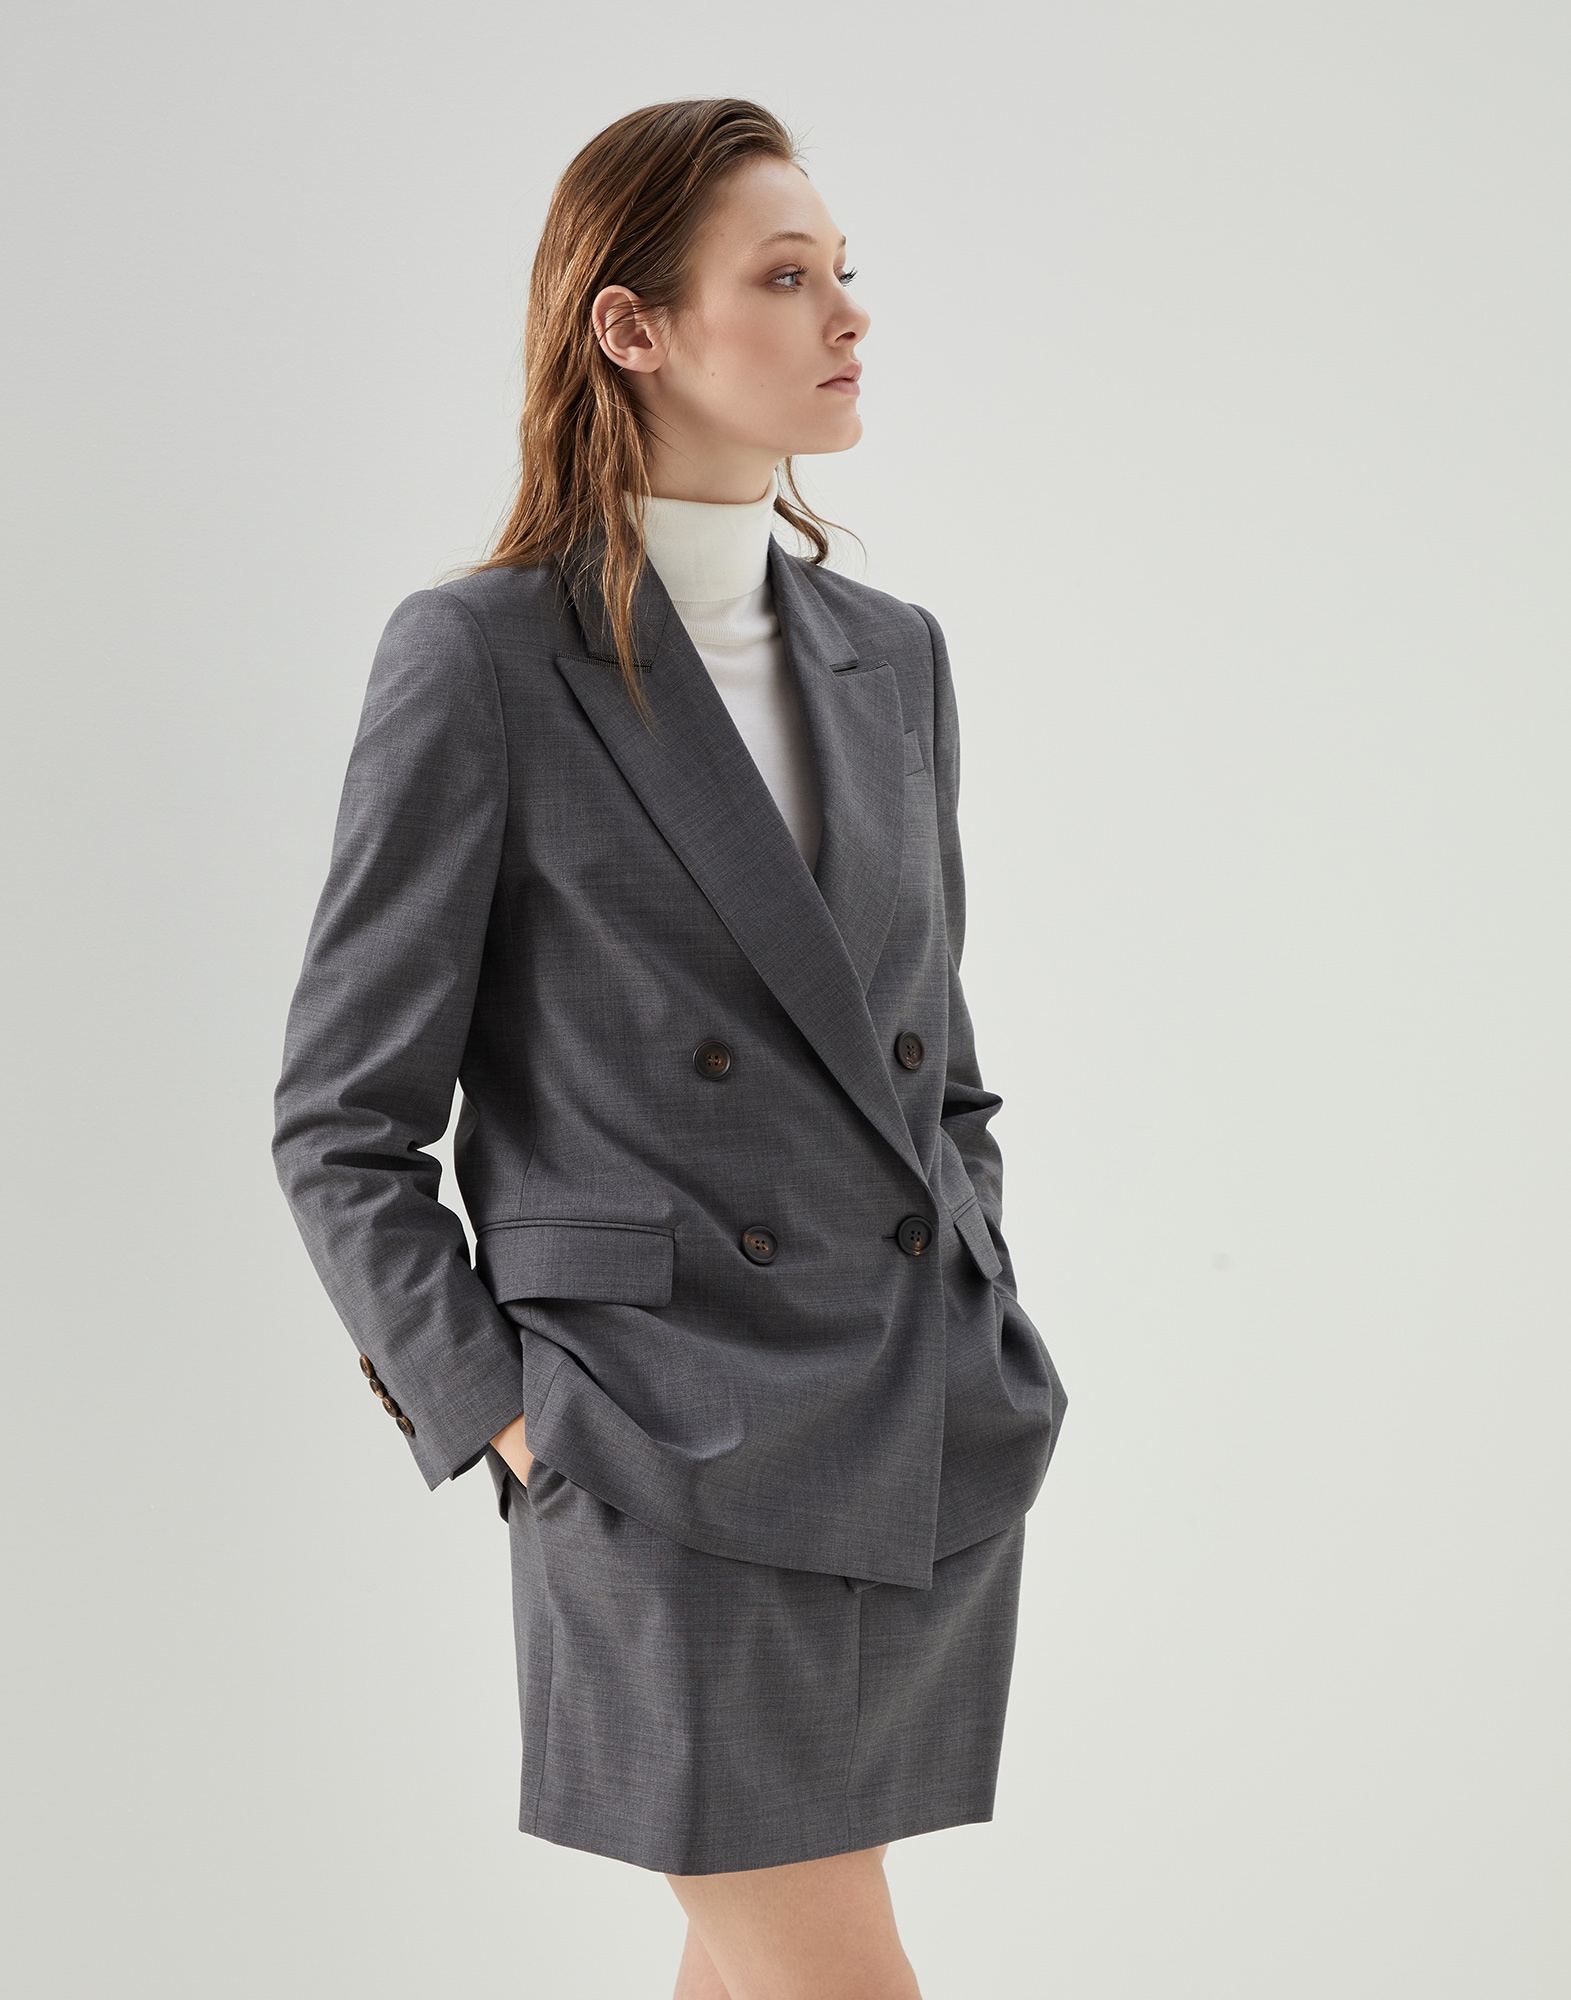 Damen Bekleidung Jacken Blazer Sakkos und Anzugsjacken Brunello Cucinelli Wolle BLAZER GRAU WOLLE in Grau 